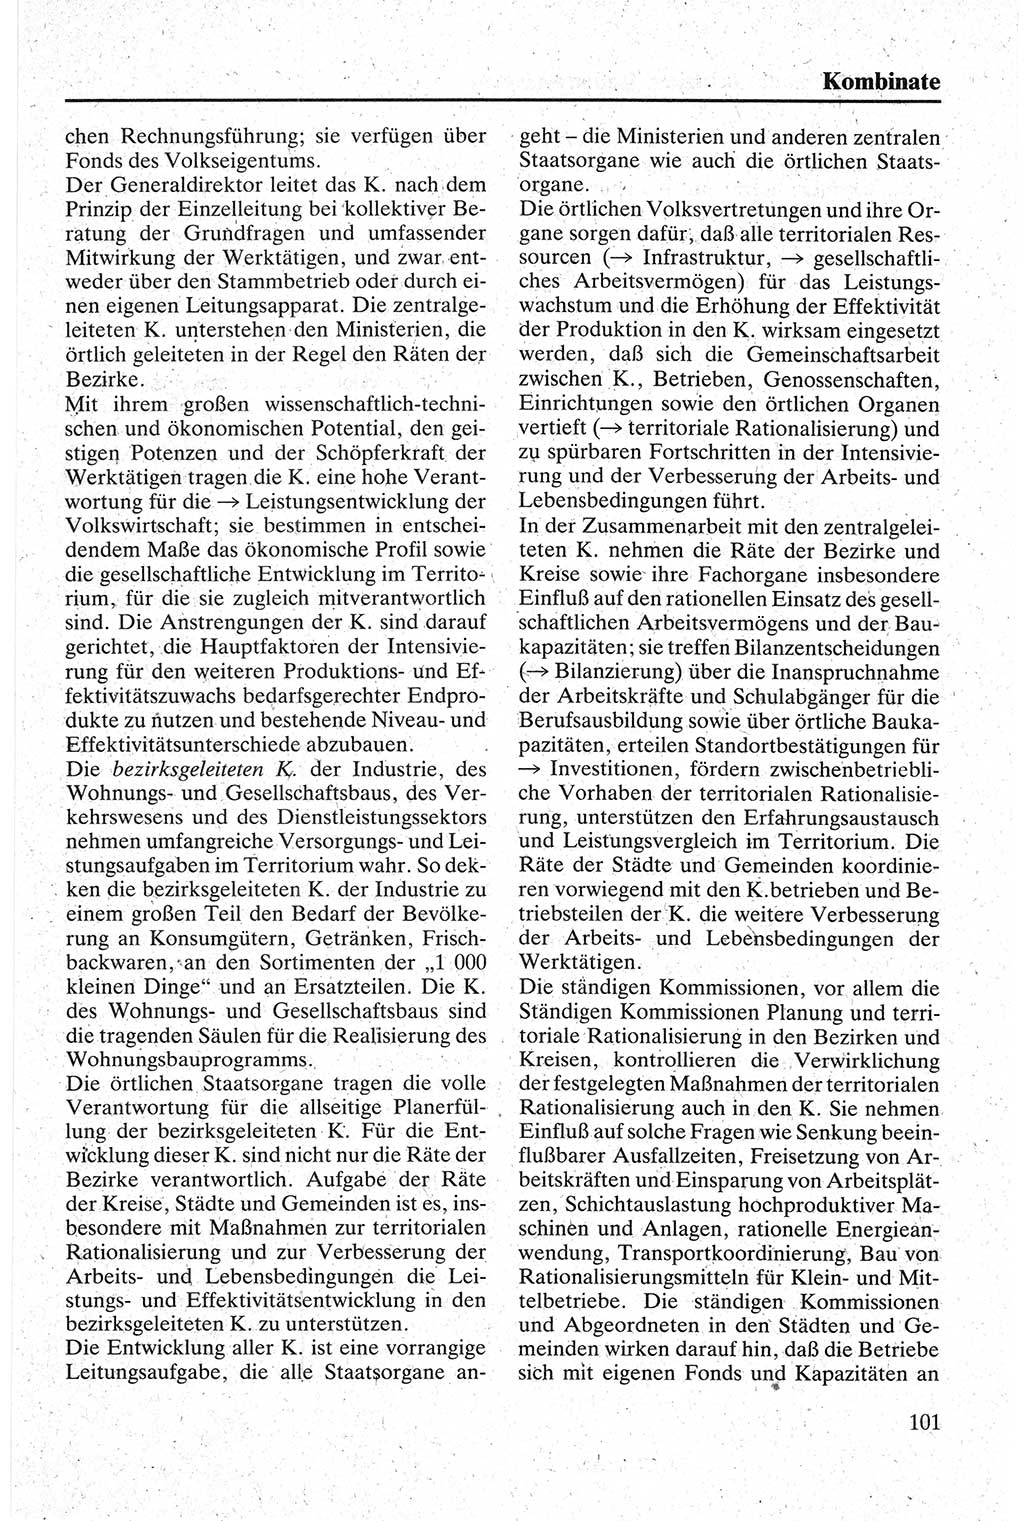 Handbuch für den Abgeordneten [Deutsche Demokratische Republik (DDR)] 1984, Seite 101 (Hb. Abg. DDR 1984, S. 101)